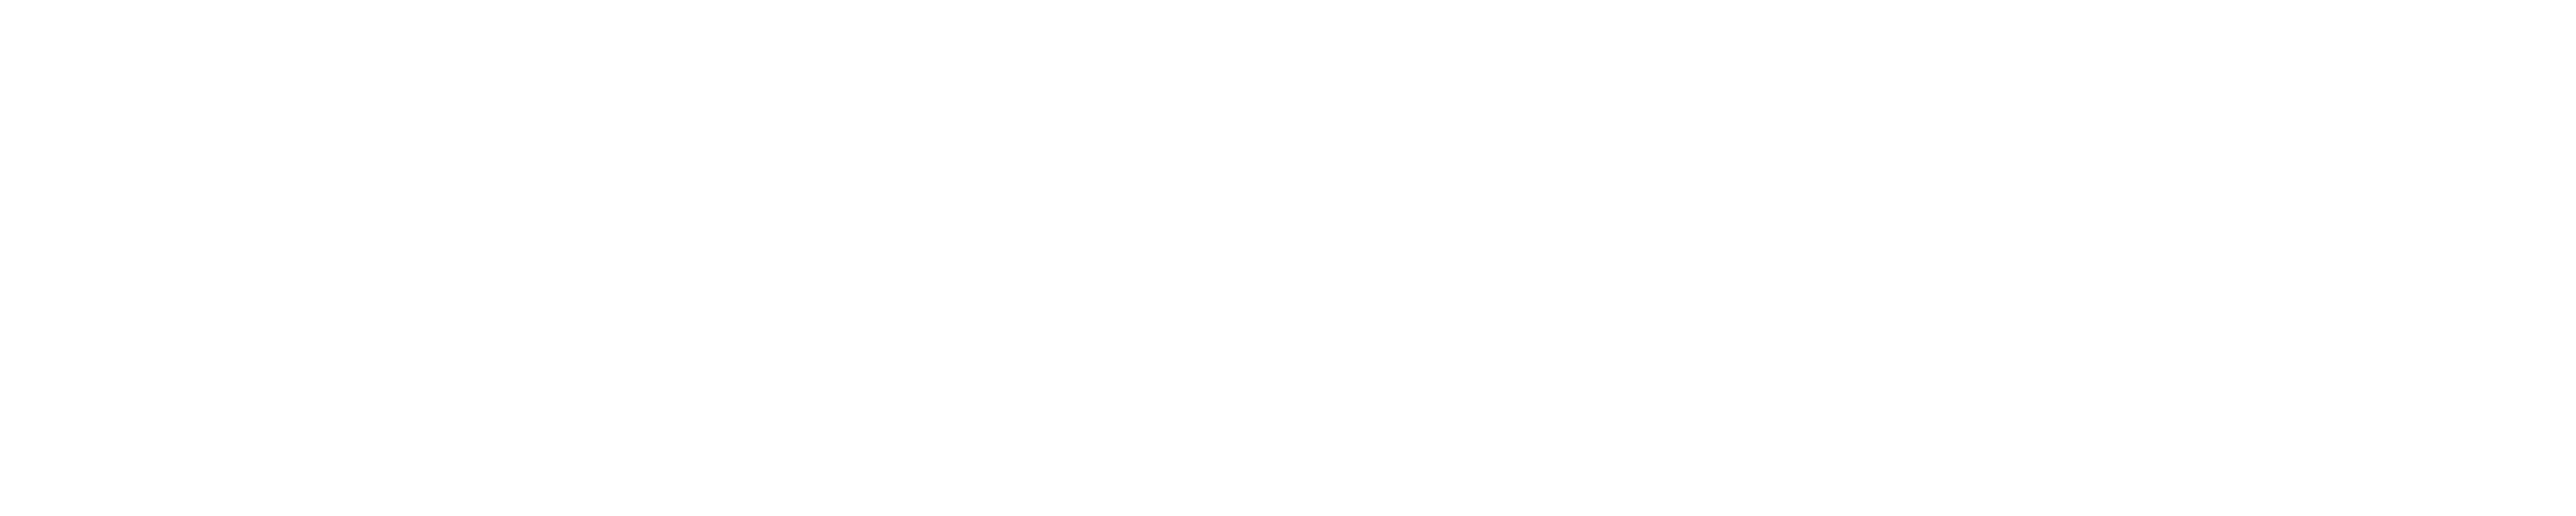 anatdel_logo